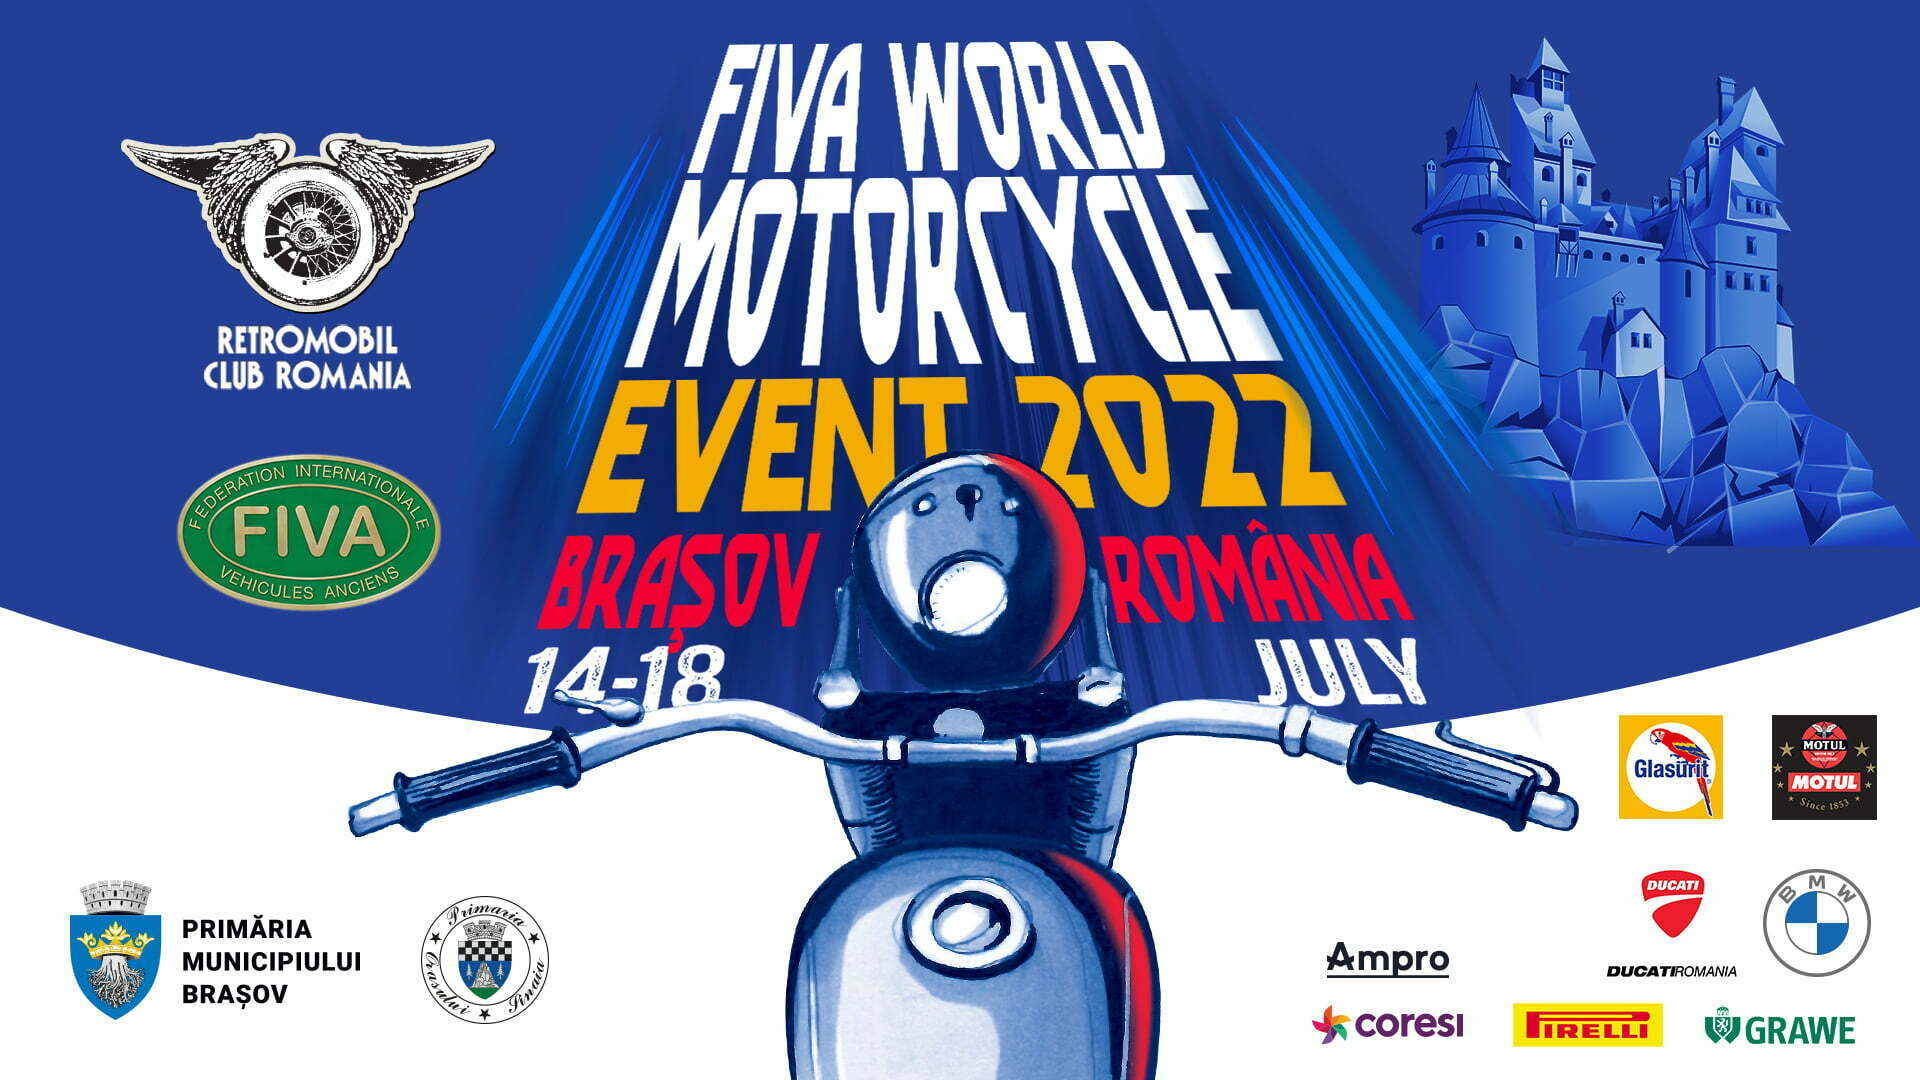 Organizatorul Retromobil Club România va desfășura la Brașov Fiva World Motorcycle Event 2022